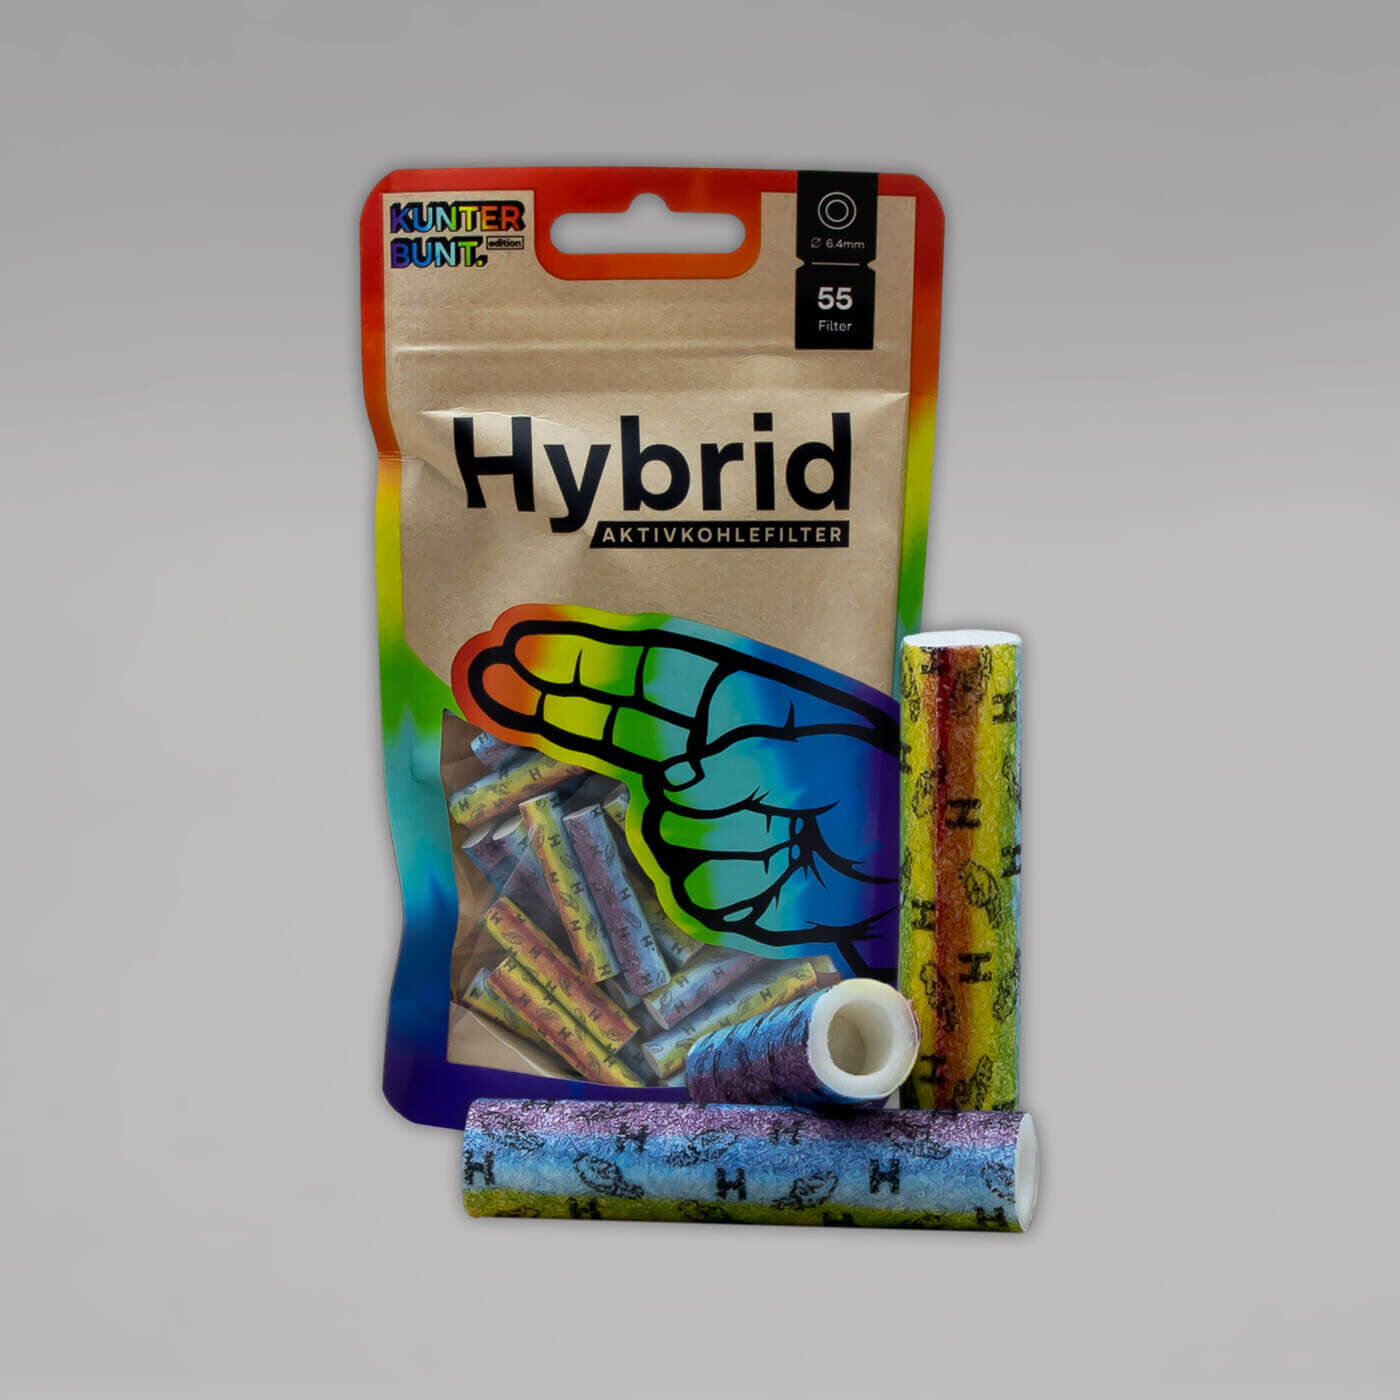 Regenbogenfilter von Hybrid jetzt günstig bestellen